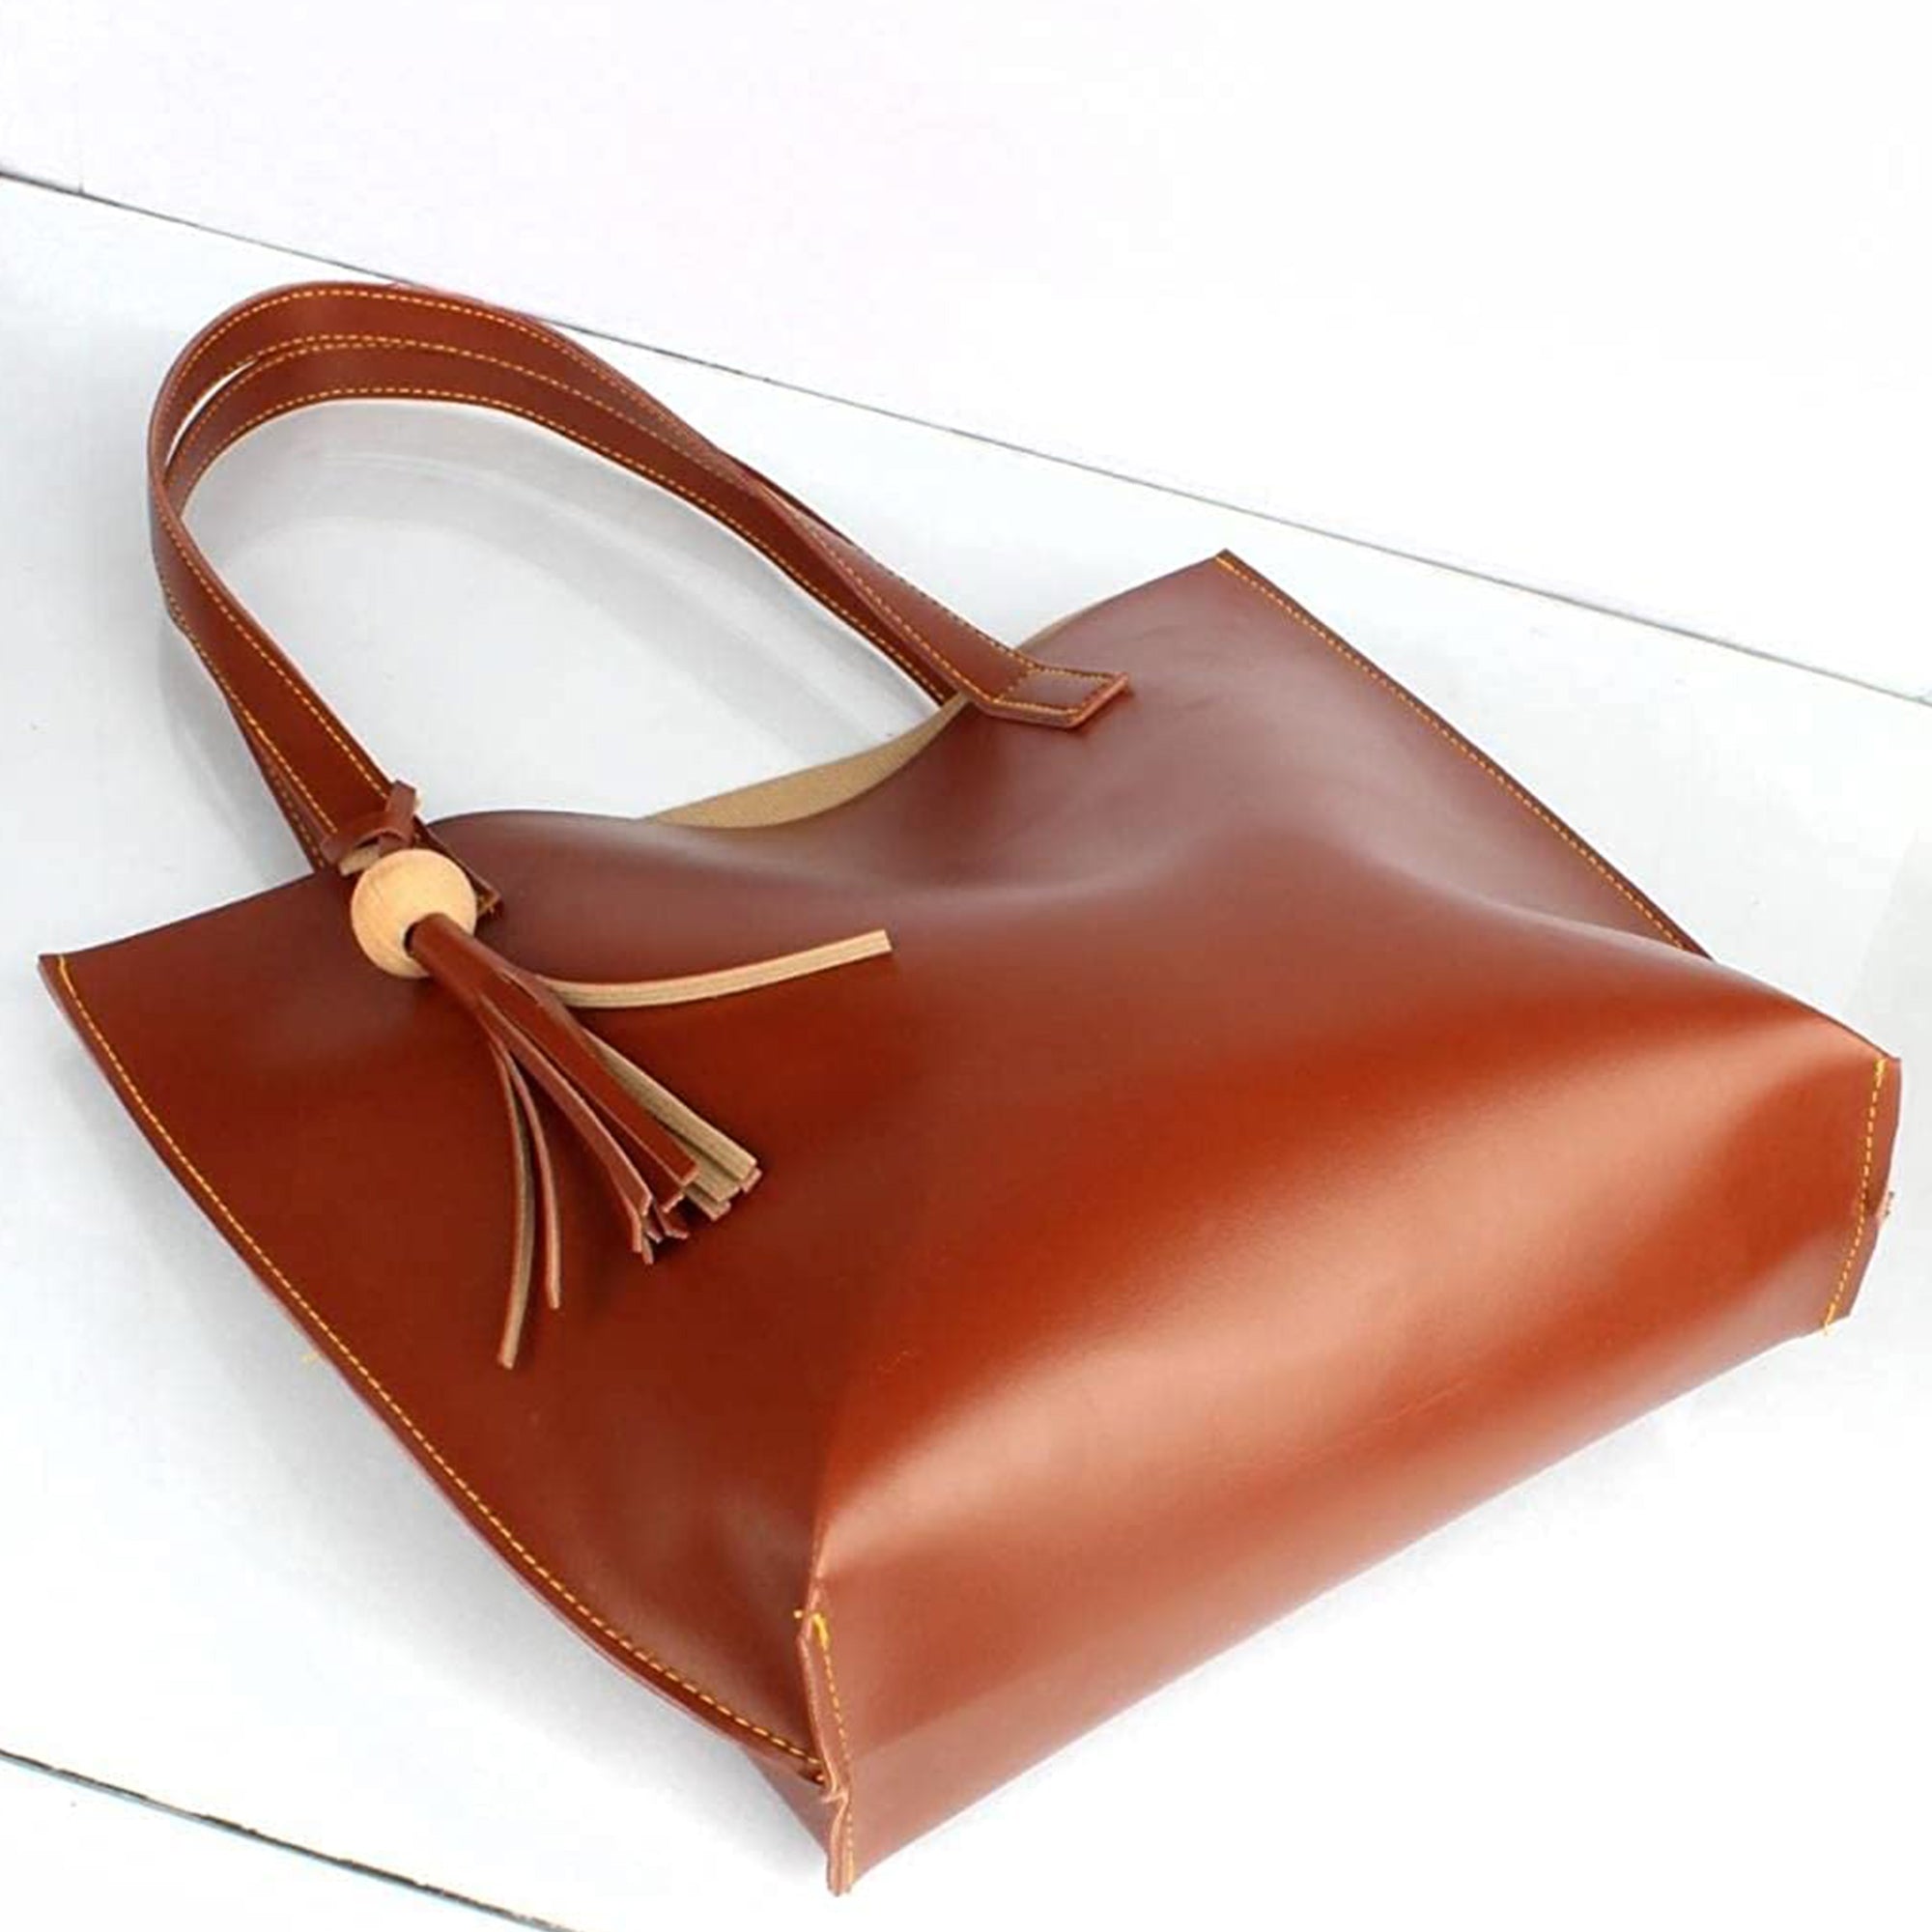 TMN - Women Brown Vegan Leather Tote Bag